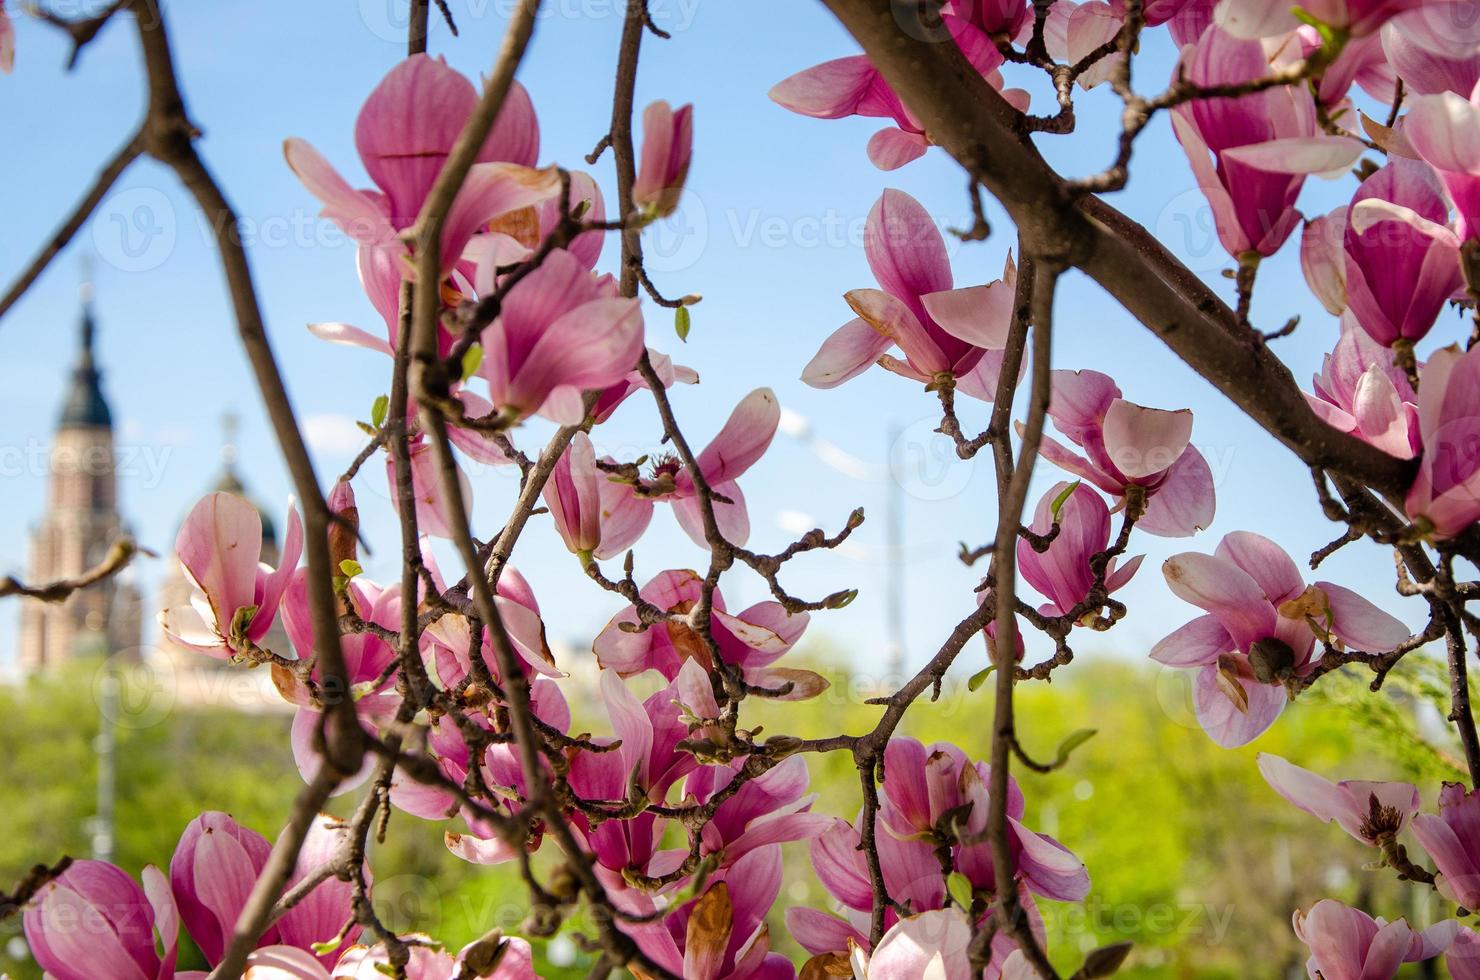 magnólia desabrochando em flores da primavera em uma árvore contra um céu azul brilhante foto